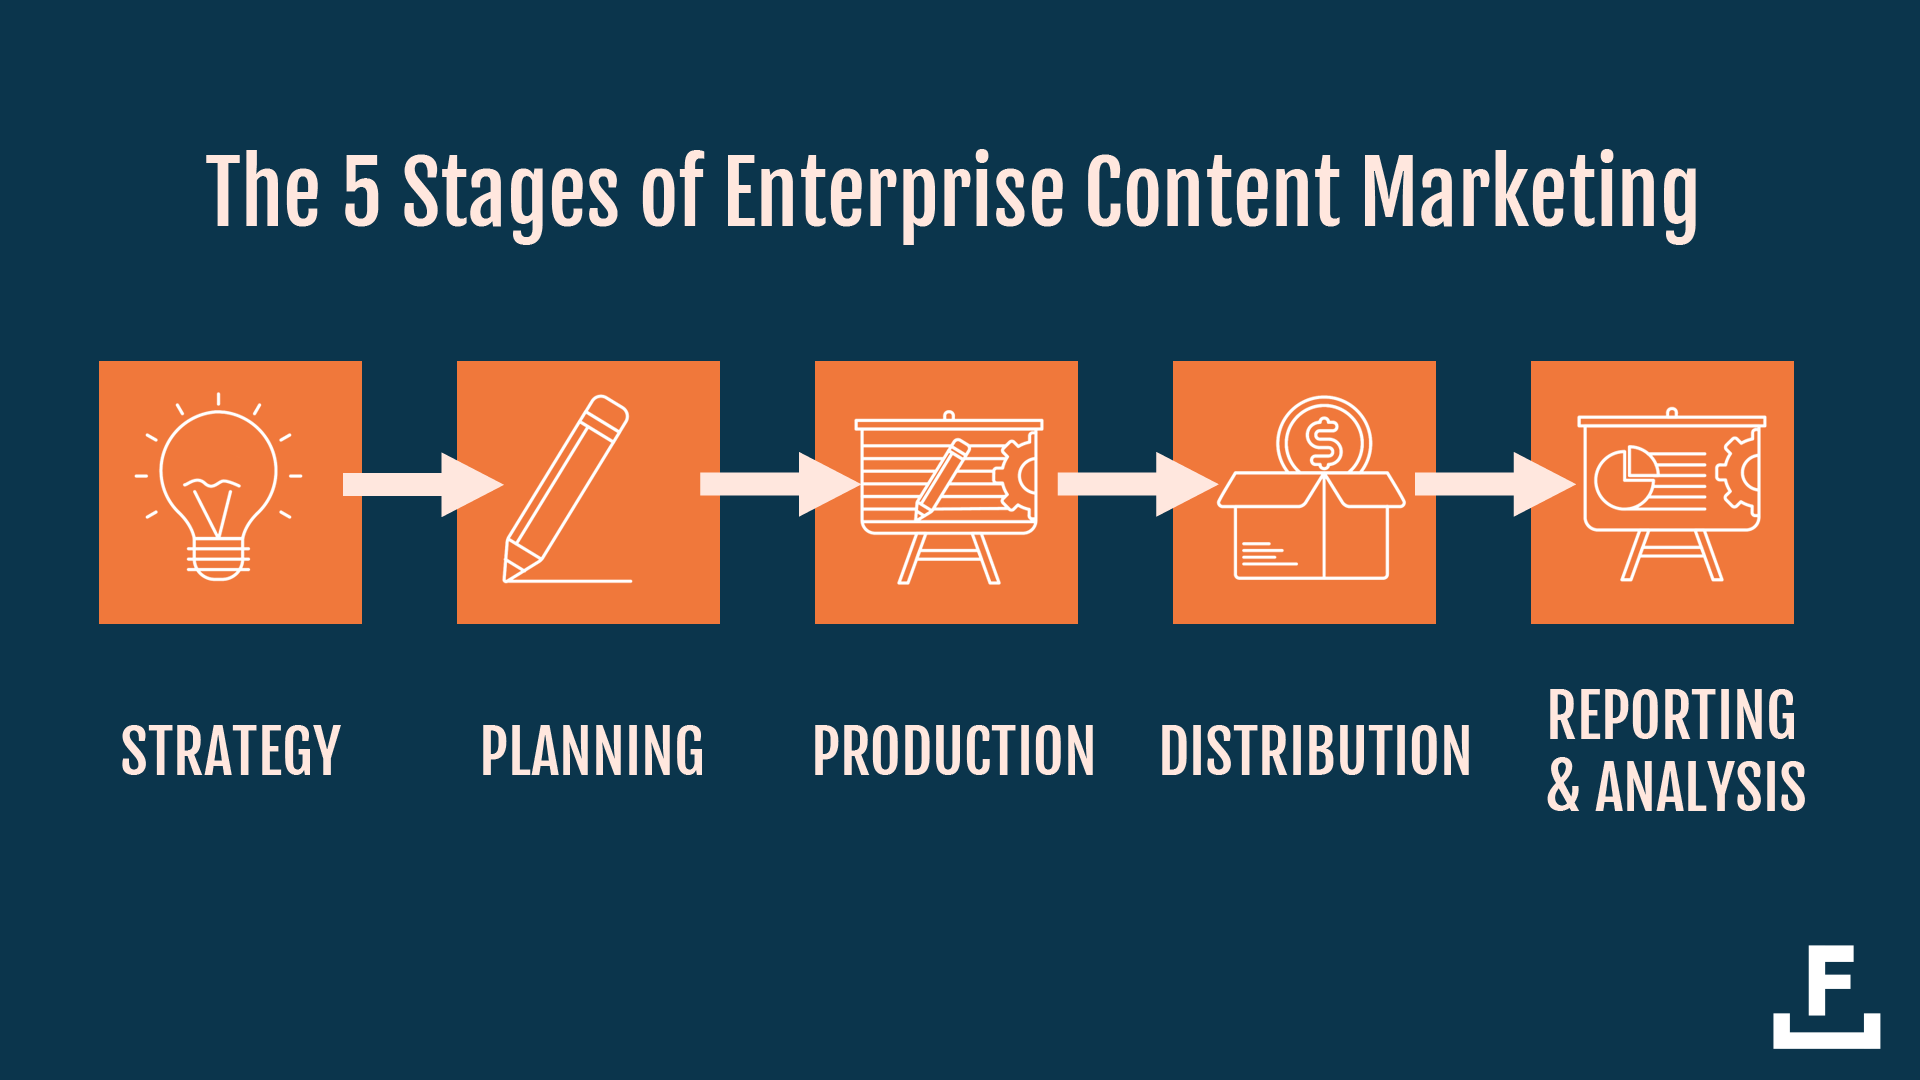 Um Inhalte auf Unternehmensebene zu produzieren, müssen Sie fünf Phasen durchlaufen: Strategie, Planung, Produktion, Vertrieb und Analyse